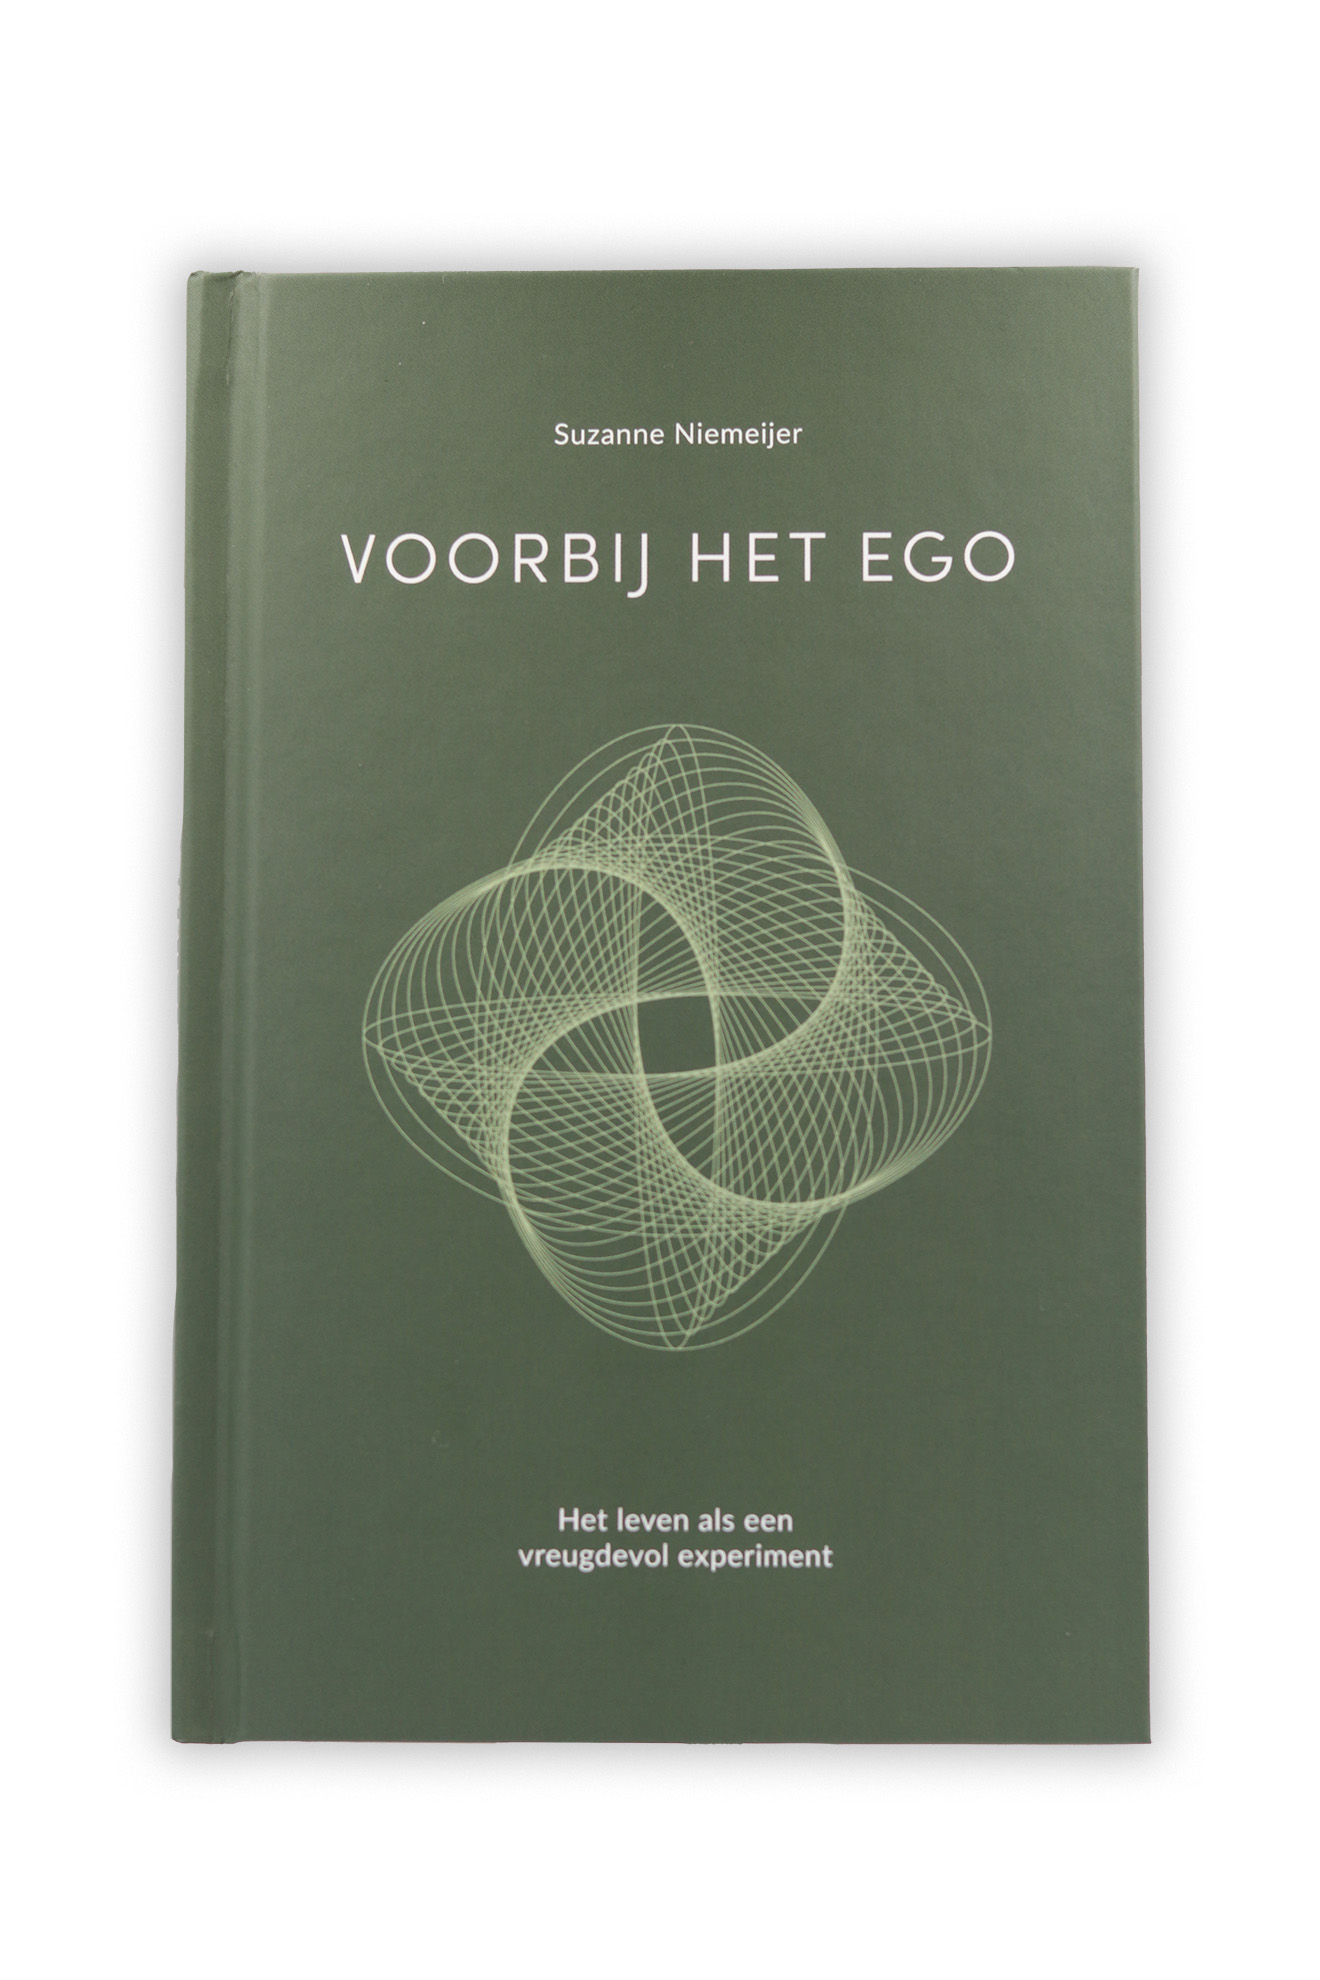 Het boek 'Voorbij het Ego' van Suzanne Niemeijer